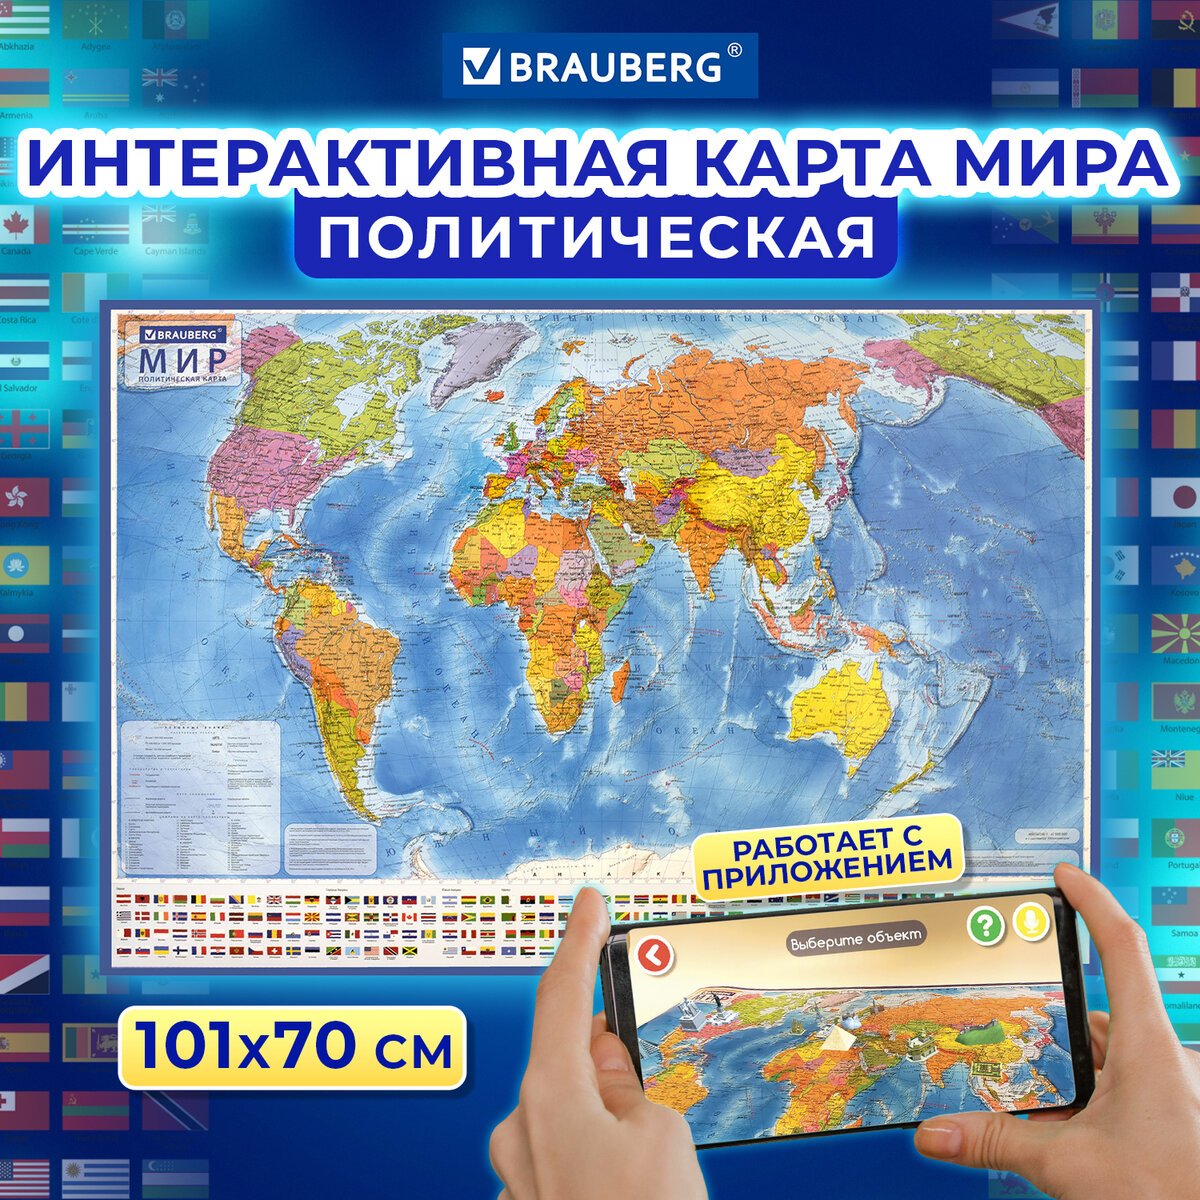 Карта мира политическая 101х70 см, 1:32М, с ламинацией, интерактивная,BRAUBERG - купить географической карты в интернет-магазинах, цены наМегамаркет